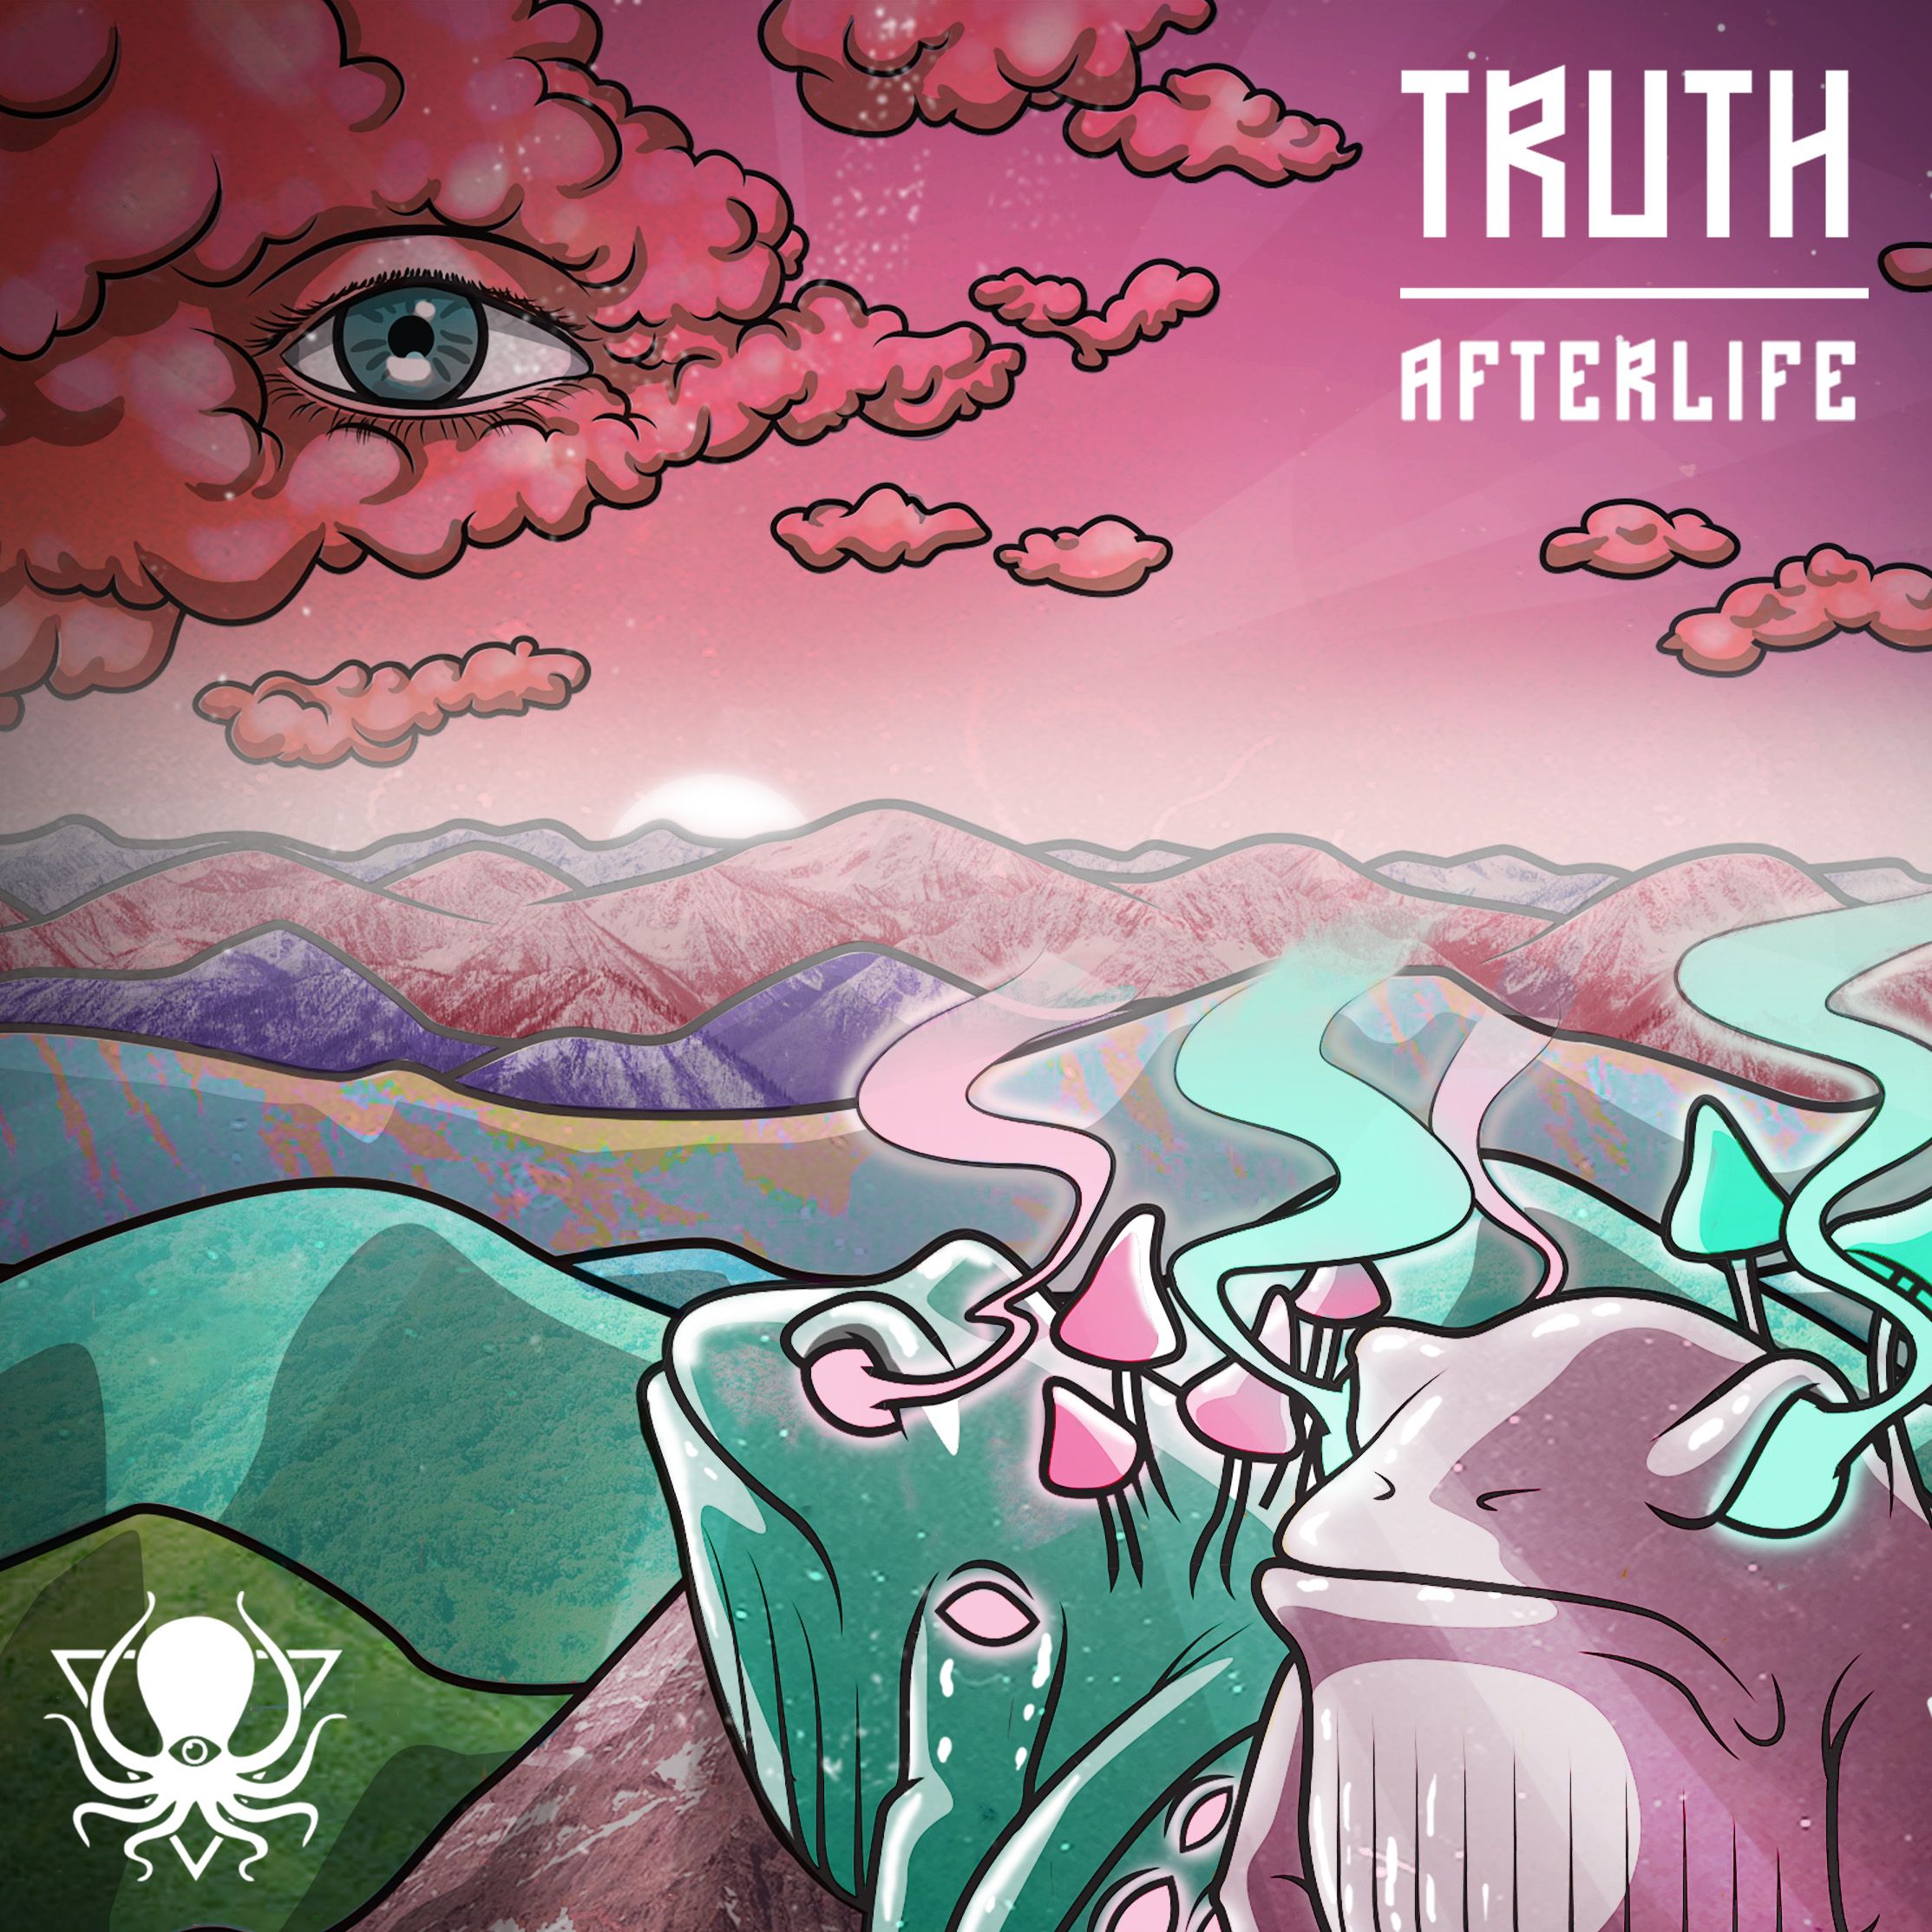 ডাউনলোড করুন Truth - Afterlife (DDD095)